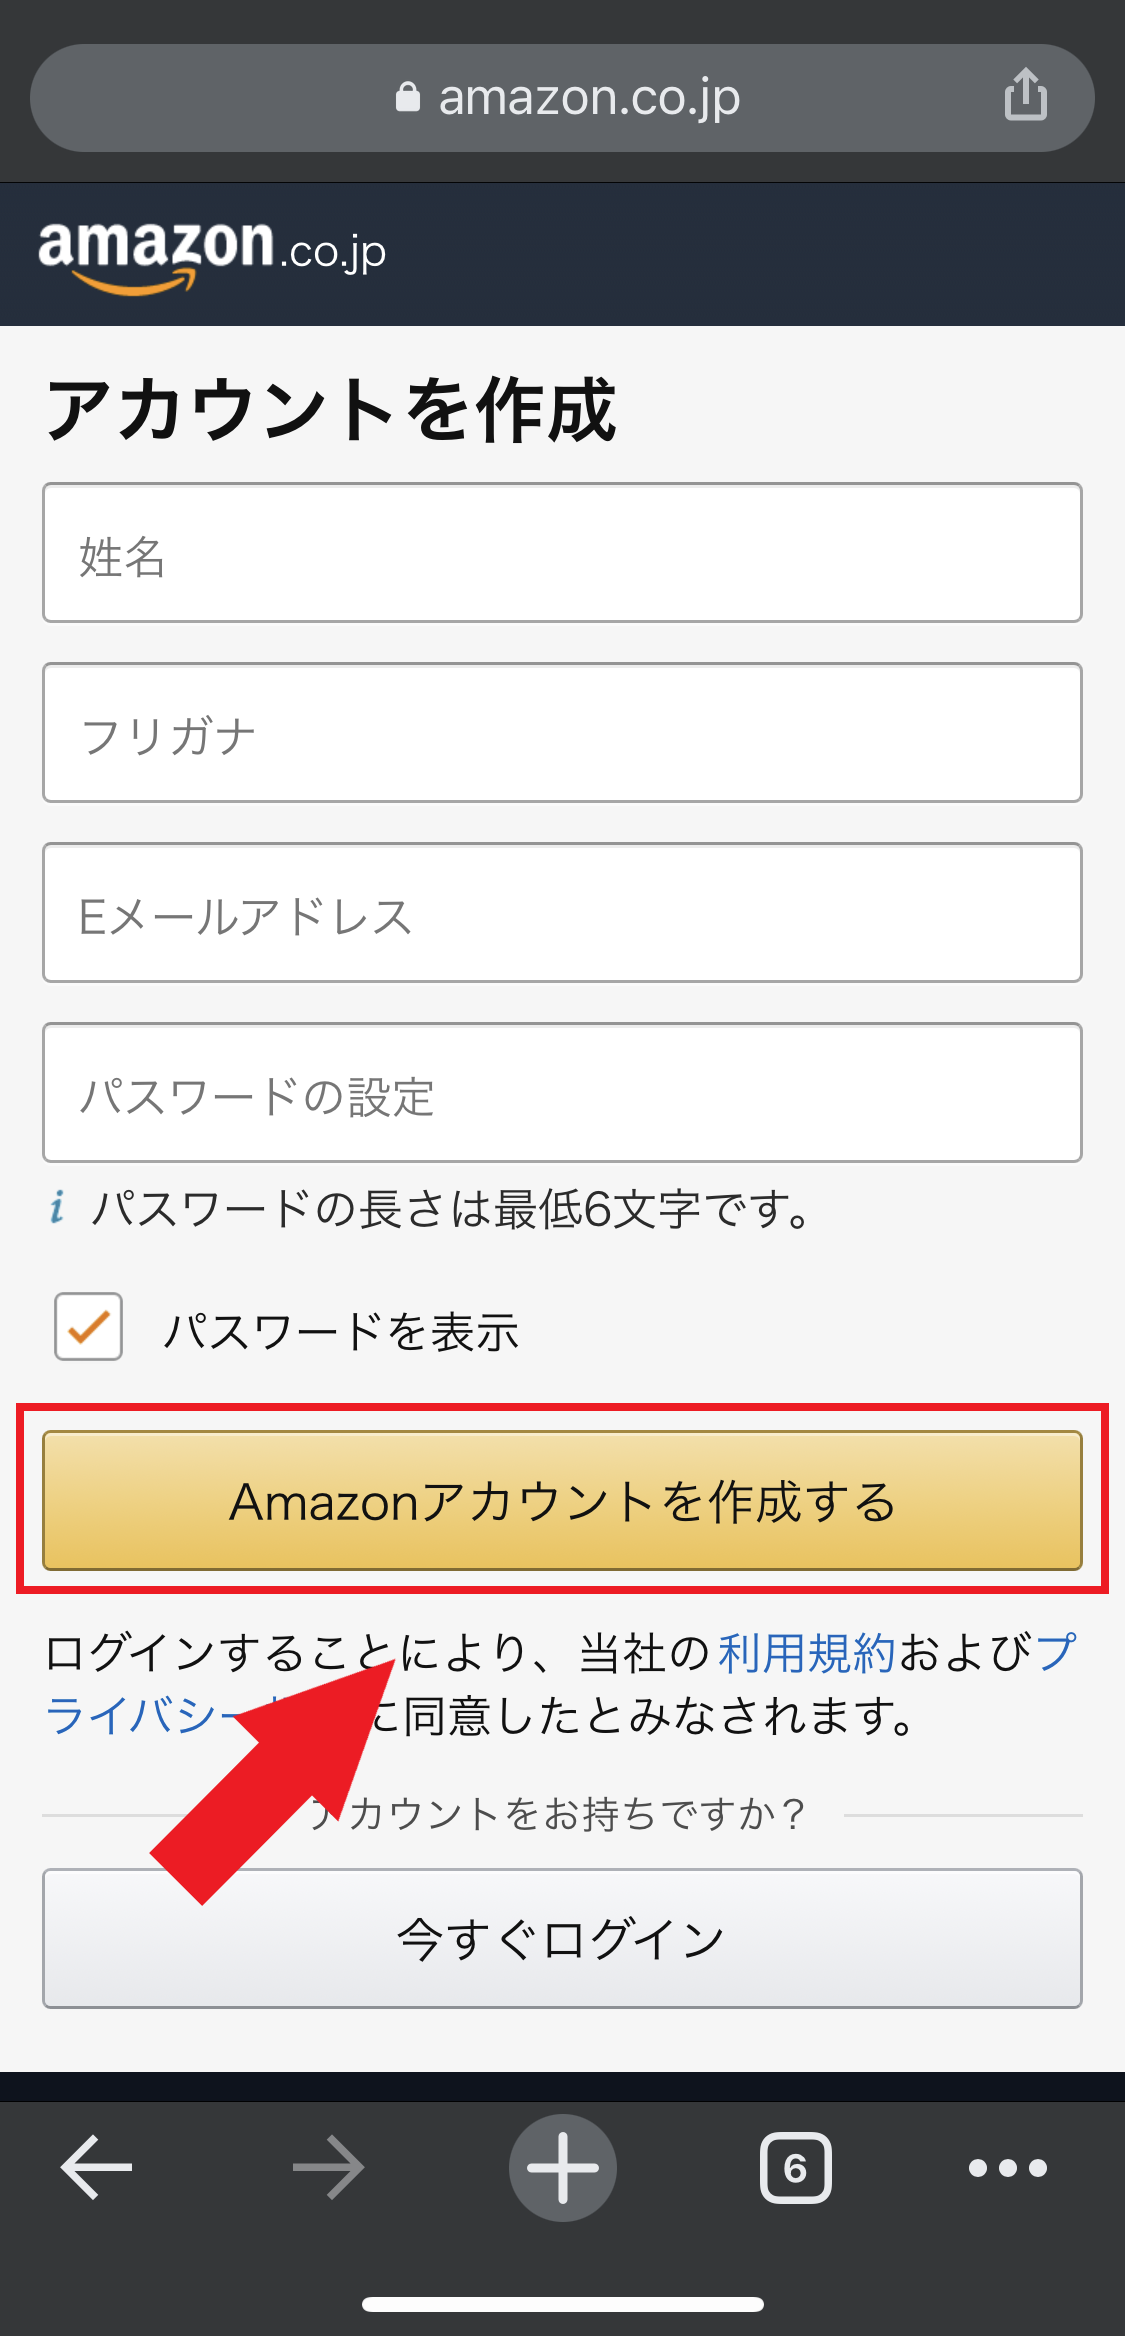 Amazon アカウント 作成